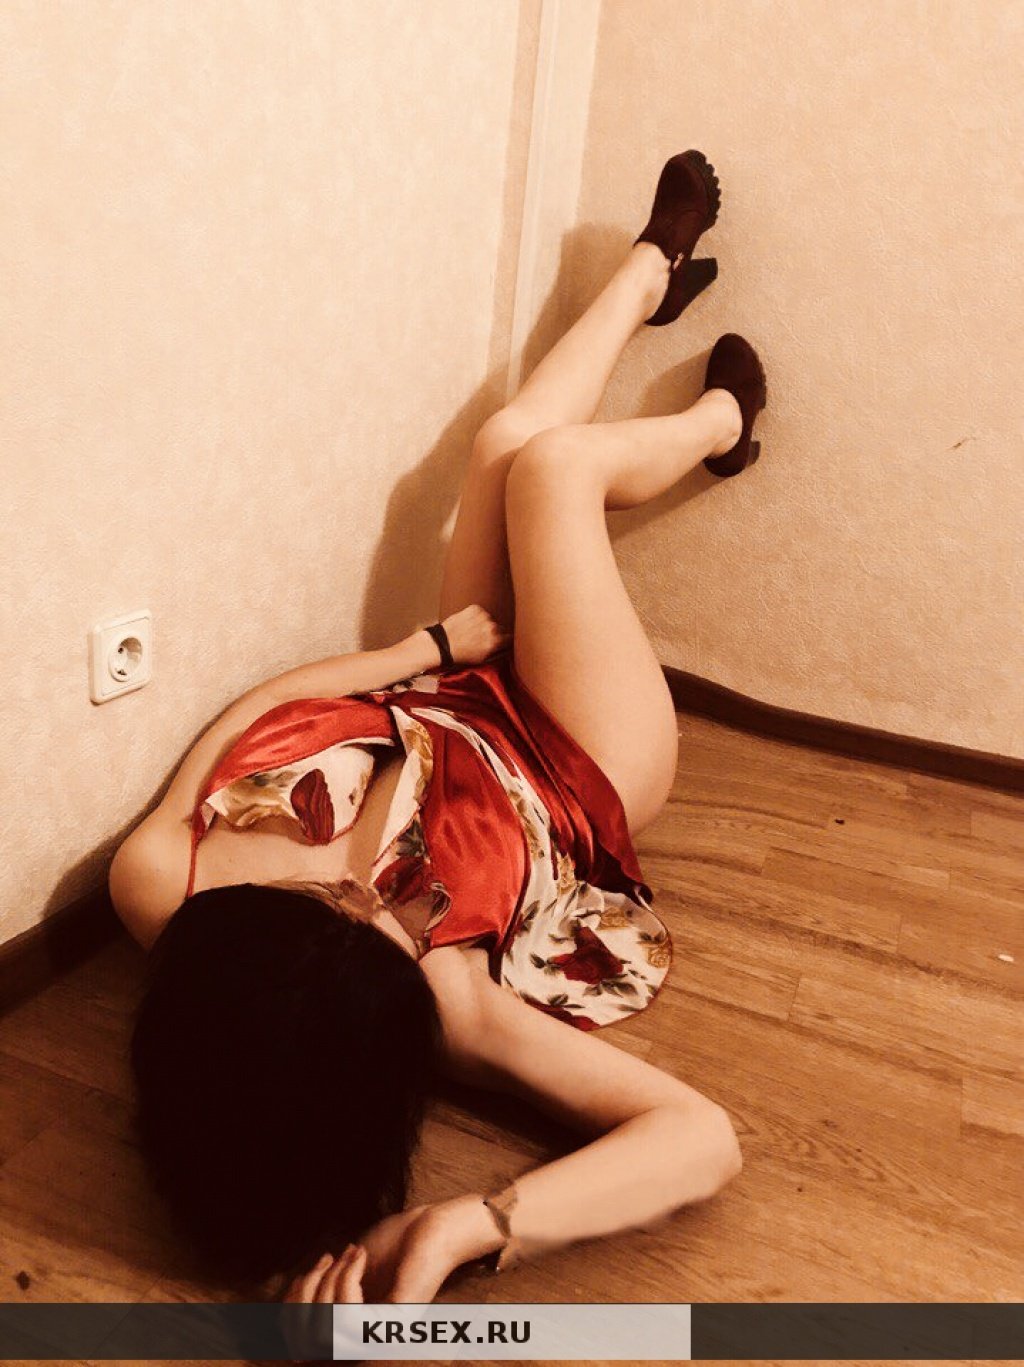 Оля: проститутки индивидуалки в Красноярске